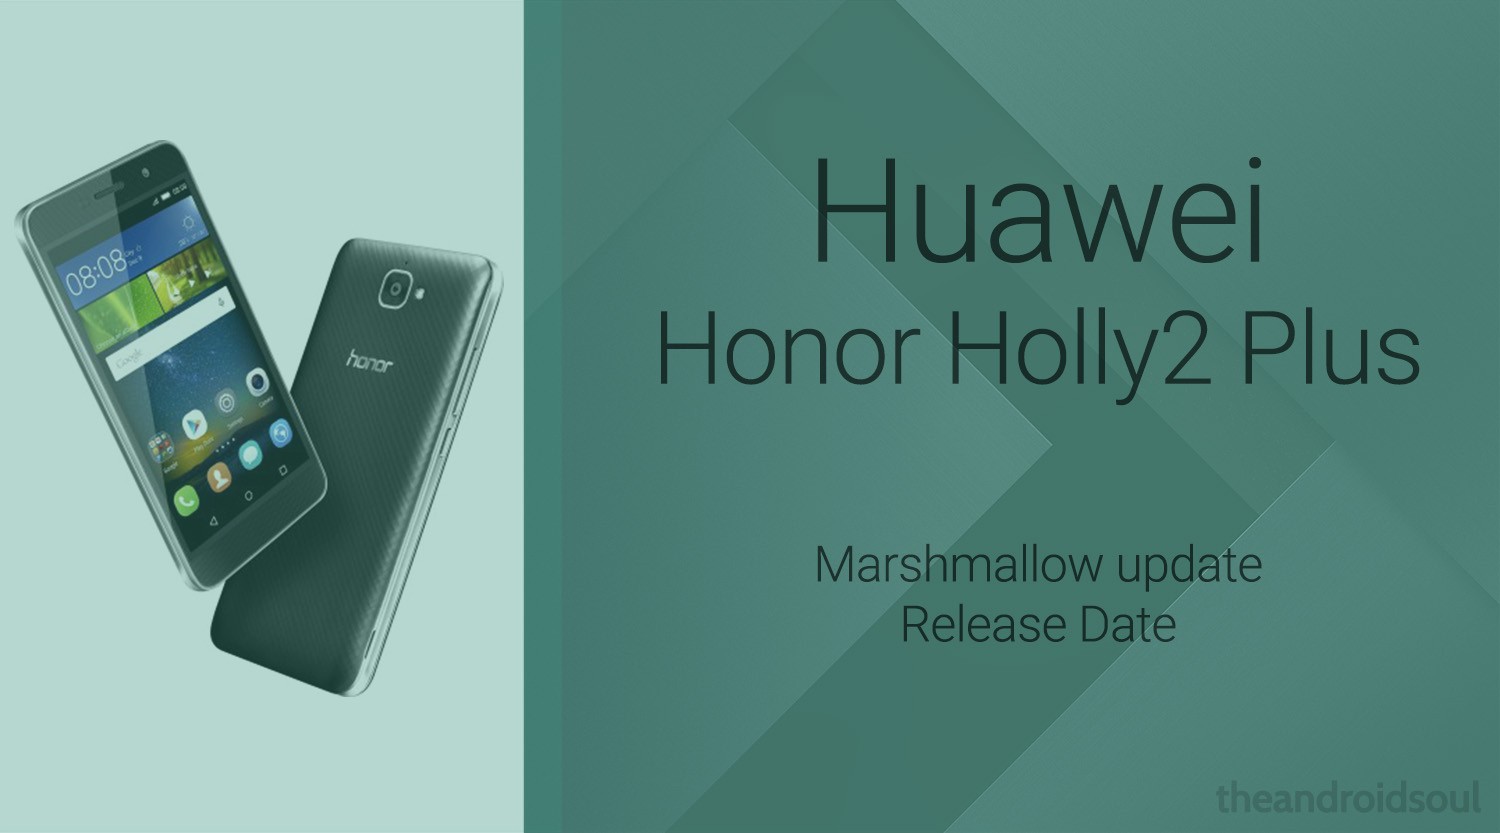 La actualización de Honor Holly2 Plus Marshmallow se lanzará a fines de febrero